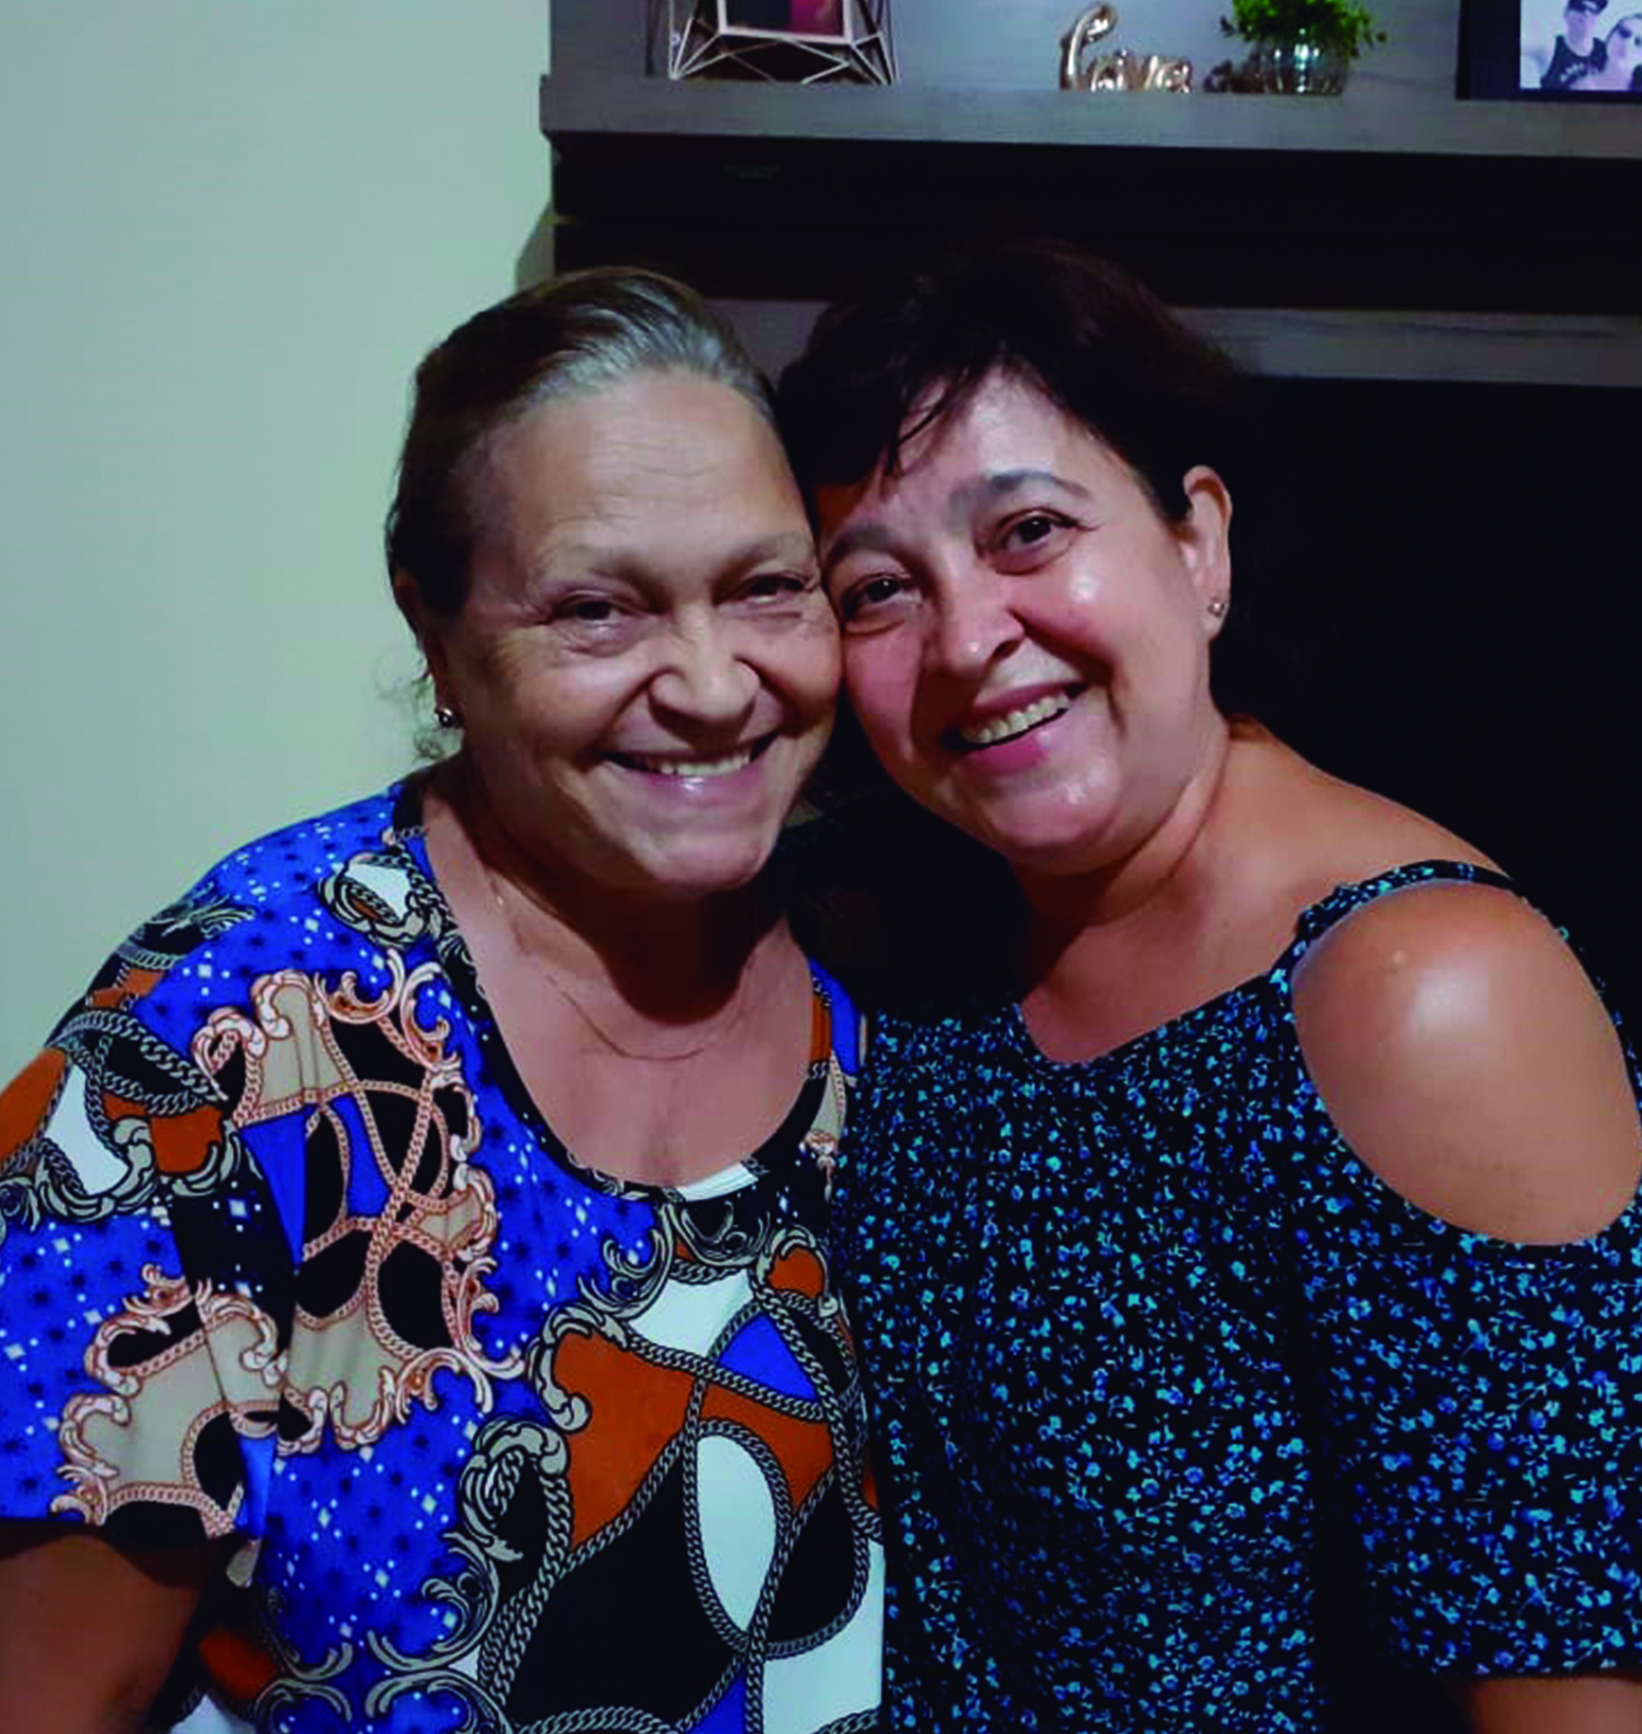 Prela. Miriam e mae Reconciliar-se com os pais é a fonte da felicidade Olá! Meu nome é Mirian Regina Silva Fontes; conheci a Seicho-No-Ie em 1988, na cidade de Mogi-Guaçu, minha cidade natal, localizada no interior do estado de São Paulo. Sou Preletora da Seicho-No-Ie há 25 anos, e atualmente trabalho na Superintendência da Associação Pomba Branca da SEICHO-NO-IE DO BRASIL, como Coordenadora da Equipe Centro-Oeste e do Departamento Infantil e Kodomokai da SEICHO-NO-IE DO BRASIL. Venho compartilhar minha história de felicidade, conquistada graças às práticas do Ensinamento da Seicho-No-Ie em minha vida.
Sempre fui uma pessoa religiosa, sempre gostei de rezar. Porém, quando mais jovem, nutria um sentimento de revolta contra Deus. Isso porque, quando estava com 7 anos de idade, minha mãe resolveu sair de casa para viver com outra pessoa, deixando a mim, meu pai e meus dois irmãos. Para ajudar na criação dos filhos, meu pai optou por morarmos com meu avô paterno, que era um homem muito bravo, muito rígido. Nós três, como todas as crianças, corríamos durante as brincadeiras em casa e fazíamos os barulhos naturais da vida na infância, mas esse meu avô não tinha paciência e acabávamos apanhando sempre. Apanhamos muito. Cresci profundamente triste, porque quando apanhávamos eu pensava que, se minha mãe não tivesse ido embora, nós não estaríamos passando por aquilo. Eu queria ter aquela mãe amorosa que eu ouvia minhas amigas comentando, mas a minha não estava ali. Fui nutrindo sentimento de ódio pela minha mãe, pois me sentia lesada pela conduta dela.
A vida foi passando, e eu cresci com esses sentimentos de tristeza e revolta. Pensava que tinha nascido para ser infeliz e que assim seria até o fim. Quando estava com 20 anos, comecei a trabalhar num banco e uma querida amiga do trabalho me deu uma revista da Seicho-No-Ie. Lá estava escrito que podemos ser felizes, mediante nossa transformação. Identifiquei-me prontamente com o Ensinamento, me apaixonei por ele, e passei a frequentar as reuniões da Seicho-No-Ie na Associação Local da minha cidade. Aprendi diversas coisas maravilhosas nessas reuniões, entre elas o Ensinamento que consta na Revelação Divina da Grande Harmonia, do livro Revelações Divinas (Masaharu Taniguchi, 1ª ed., 2012, p. 13). Essa Revelação orienta que devemos ser gratos aos pais, pois quem não é grato aos pais não está em conformidade com a vontade de Deus. Entendi que precisava resolver essa questão com a minha mãe.
Passei a fazer a Oração para Reconciliar, que consta no livreto “Shinsokan e outras orações- Meditação para Contemplar a Deus ”(Masaharu Taniguchi, 37ª impr., 2010, p. 34), mas mesmo assim não conseguia transformar o ódio em amor. Continuei frequentando as reuniões, e mesmo depois de alguns anos na Seicho-No-Ie continuava da mesma forma. Até que fui participar de um Seminário de Treinamento Espiritual na Academia Sul-Americana de Treinamento Espiritual da Seicho-No-Ie de Ibiúna – SP. Os seminários da Seicho-No-Ie nas academias oferecem vivências, palestras e práticas que nos auxiliam muito na transformação interior que buscamos. Neste seminário, durante uma palestra do Preletor Ênio Maçaki Hara, tomei a decisão de me reconciliar com a minha mãe. Essa questão em aberto estava atrapalhando várias coisas em minha vida. Os pais são como portas para a felicidade. Quando temos amor por eles, encontramos tudo que precisamos na vida. Porém, quando mantemos sentimentos desarmoniosos com relação a eles, ainda que tenhamos razão para isso, as “saídas” para a vida parecem estar fechadas.
Nessa época, estava morando com a minha mãe, exatamente para resolver todas essas questões.  Apesar de ter tomado a decisão de perdoar, ainda não conseguia sentir amor. Então, fui participar de outro seminário, o Seminário para Jovens Mulheres, realizado pela Associação dos Jovens da SEICHO-NO-IE DO BRASIL (AJSI/BR). Este seminário é tradicionalmente realizado durante o feriado de Páscoa. Dediquei todas as práticas daquele seminário para o objetivo de me reconciliar com a minha mãe. Quando retornei, tomei coragem, joguei a mala num canto e fui procurar minha mãe. Encontrei-a lavando louça, na pia da cozinha. Ajoelhei-me no chão, abracei os pés dela, e pedi perdão, do fundo do coração. Foi emocionante. Ficamos abraçadas ali, durante uns 10 minutos, e pela primeira vez conversamos sobre os motivos que a levaram a sair da nossa vida naquela época. Só então pude conhecer sua versão da história e entender os sentimentos dela. Justamente num Domingo de Páscoa, data que representa renascimento e libertação, realmente renasci. Daquele momento em diante, toda a minha vida mudou. Com a minha reconciliação, meus irmãos também se reconciliaram com ela; a prosperidade surgiu em nossa vida e logo depois conheci minha alma gêmea, com quem hoje tenho duas filhas maravilhosas e sou plenamente feliz.  Estamos casados há 24 anos.
Sou testemunha de que o amor tudo cura, tudo resolve. Não é fácil nos ajoelharmos diante de alguém que até então odiávamos, que nos causou algum sofrimento e que por isso nos julgamos na posição de quem tem razão. Porém, a vida não é tão simples, e como seres humanos todos nós erramos vez ou outra, de modo que precisamos aprender a nos perdoar e a perdoar as outras pessoas também. Precisamos tomar a iniciativa de compreender o outro, especialmente nossos pais, pois enquanto não nos reconciliamos e não curamos os sentimentos de raiva, de mágoa, ficamos amarrados na situação e não conseguimos evoluir em todos os sentidos. Isso é necessário mesmo que eles não estejam mais neste plano.
Para quem estiver passando por uma situação de desarmonia com os pais, aconselho a fazer uma reflexão e tomar a decisão de perdoar. Isso fará bem a você e toda a família. Mesmo que não sejam os pais biológicos, na Seicho-No-Ie aprendemos que os pais adotivos são nossos pais também, assim designados por Deus para cumprir essa missão conosco. Eles merecem nossa total gratidão. Os pais biológicos também merecem profunda gratidão porque nos trouxeram à vida. Quando conseguimos amar, principalmente os pais, tudo se transforma; nossa vida passa a ter um rumo positivo, conseguimos conquistar a felicidade e encontrar a paz, que é a conquista mais importante de todas. Muito obrigada! Reuniões da Seicho-No-Ie para crianças em idioma japonês